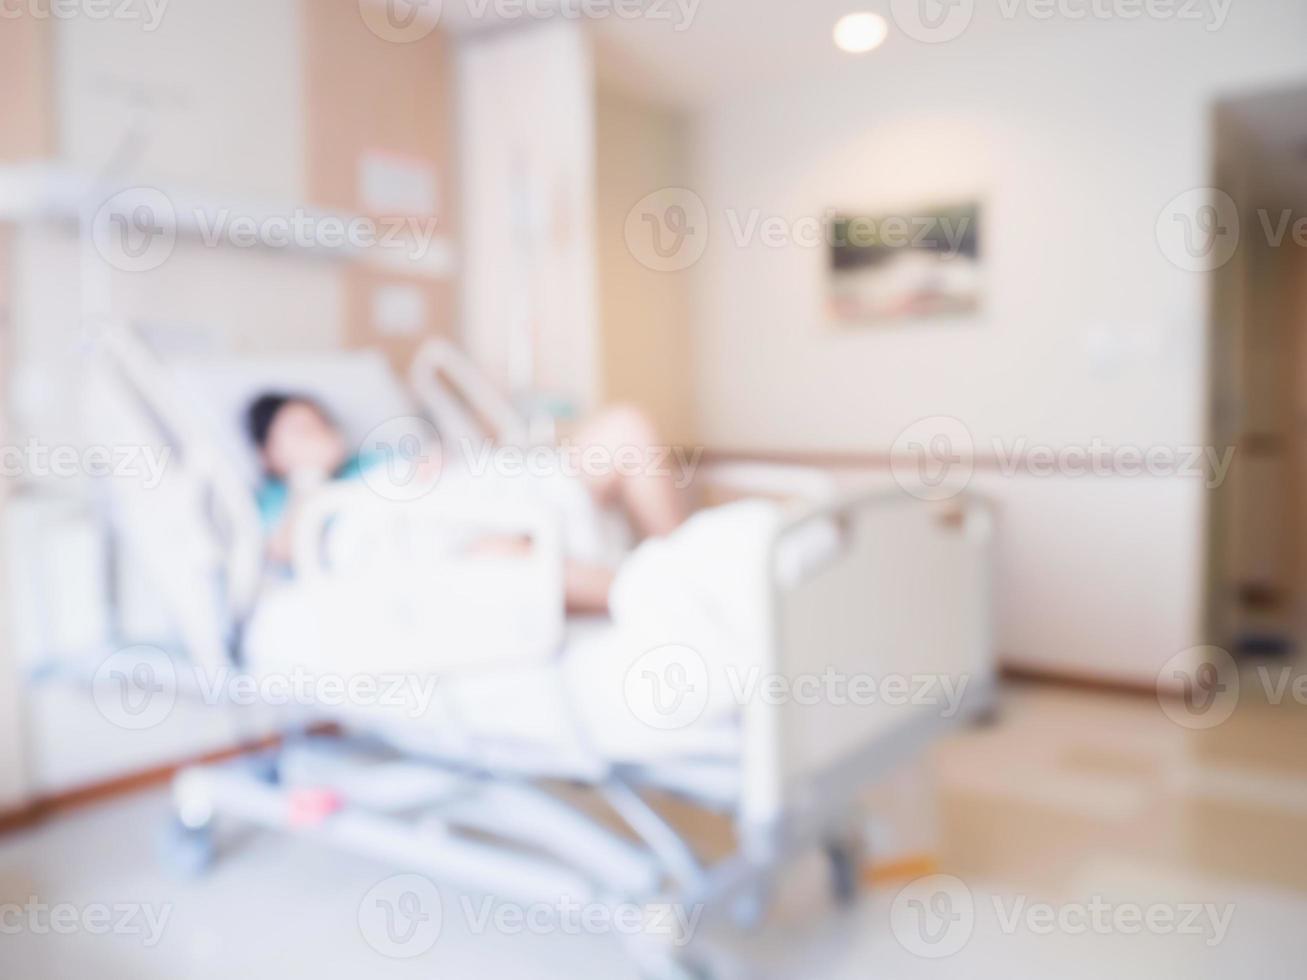 abstrakt oskärpa patient på sängen i sjukhusrum interiör för bakgrund foto